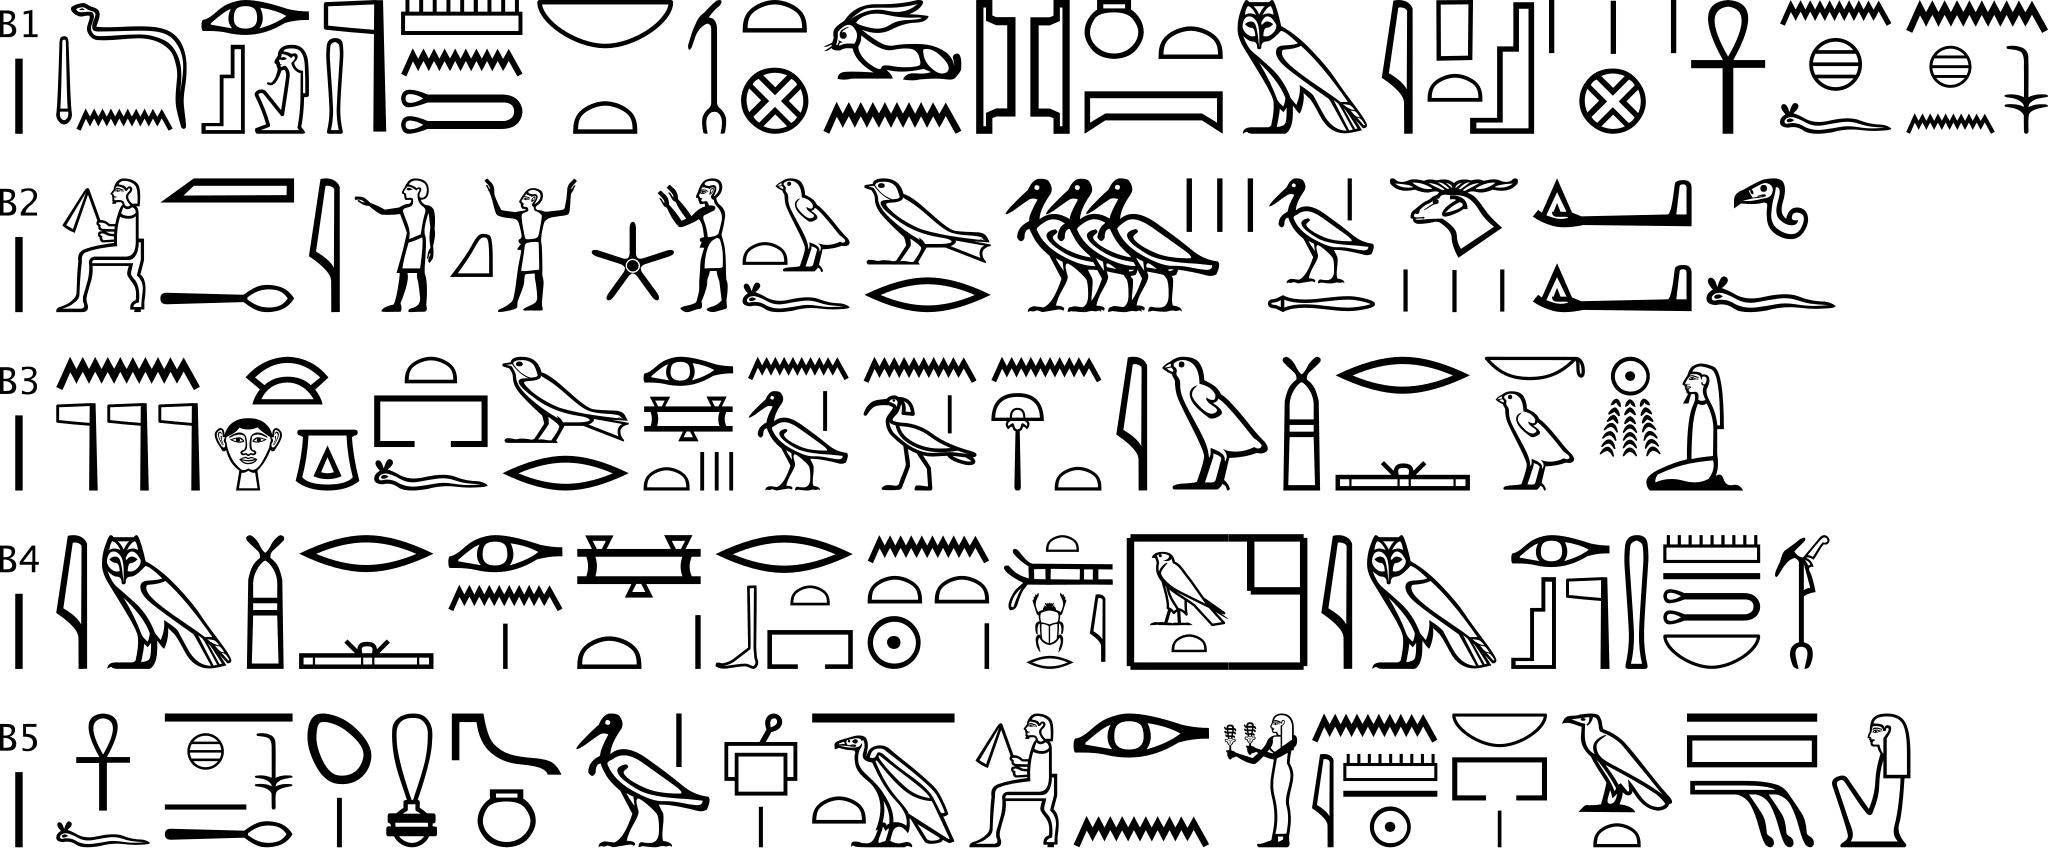 Иероглифические знаки в орнаменте древнего Египта